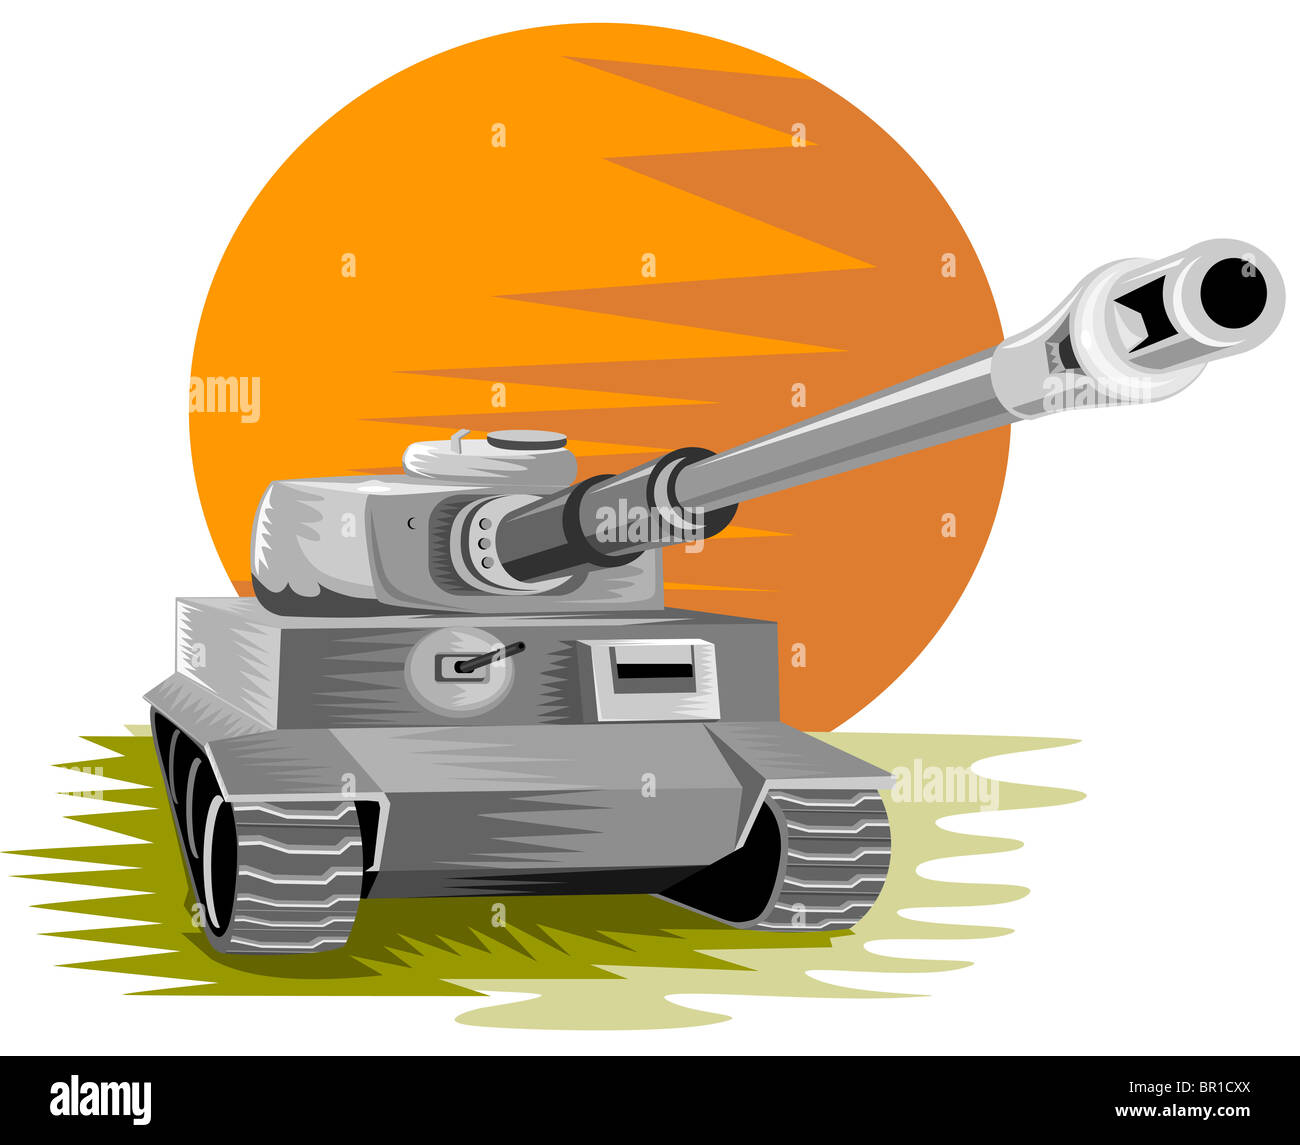 Retro-Stil Abbildung eines Zweiter Weltkrieg militärischen Kampfpanzers auf weißen Hintergrund isoliert Stockfoto